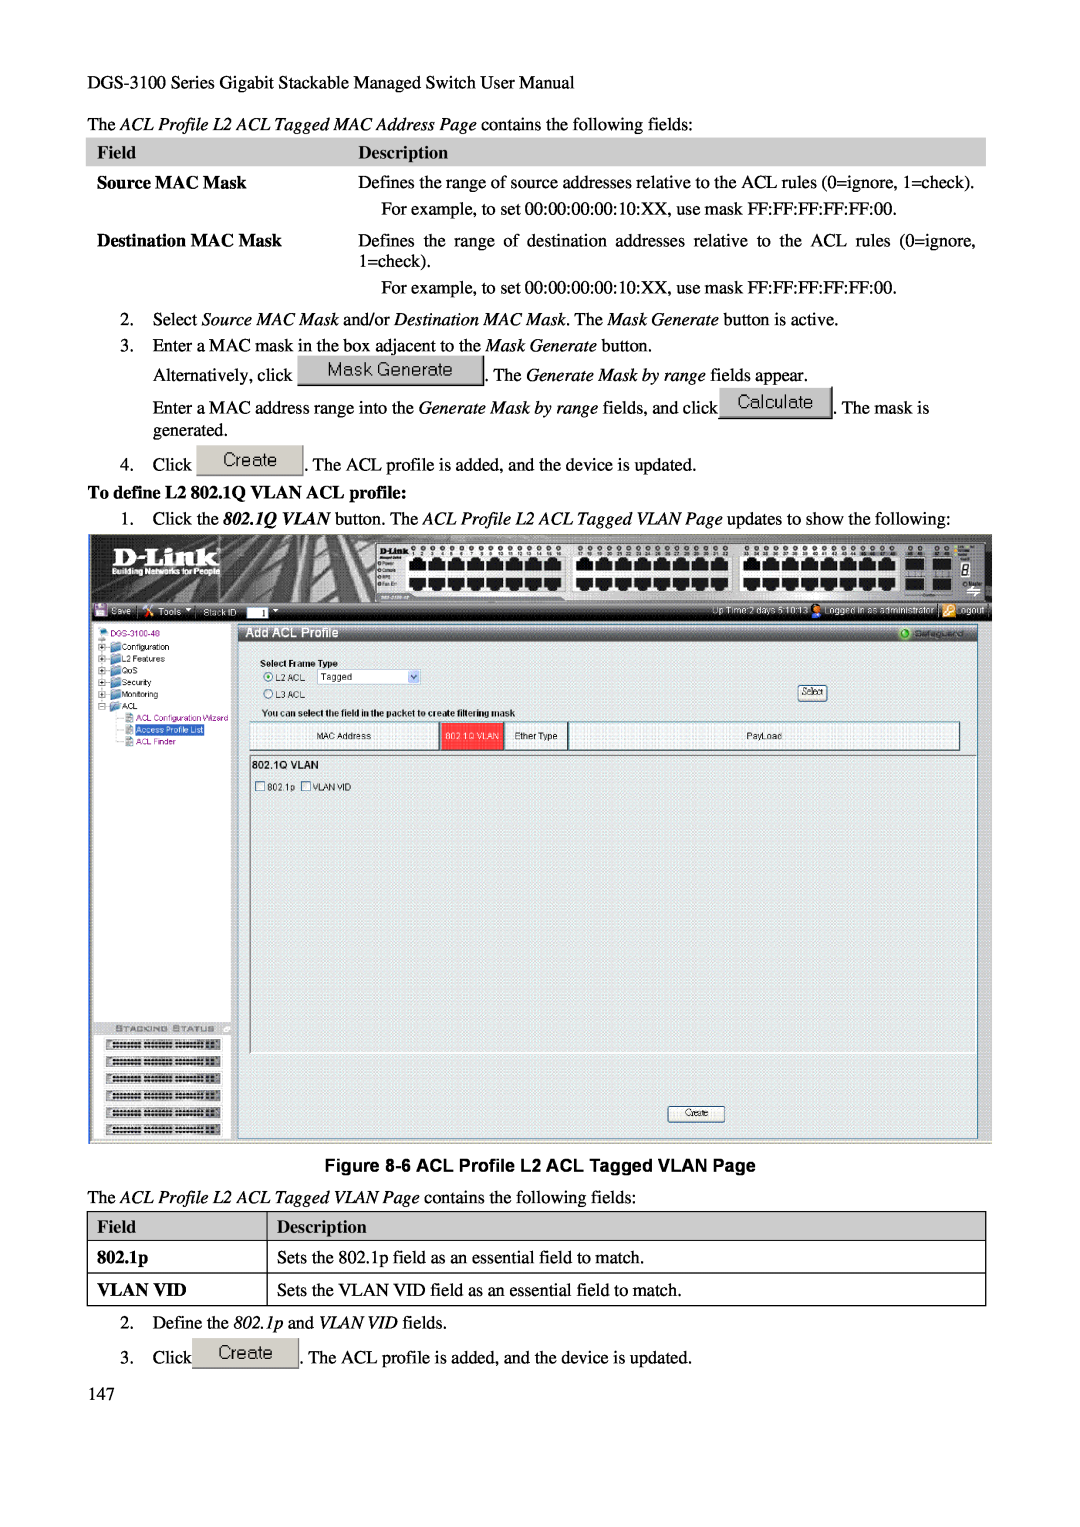 D-Link DGS-3100 Field, Description, Source MAC Mask, Destination MAC Mask, To define L2 802.1Q VLAN ACL profile, 802.1p 